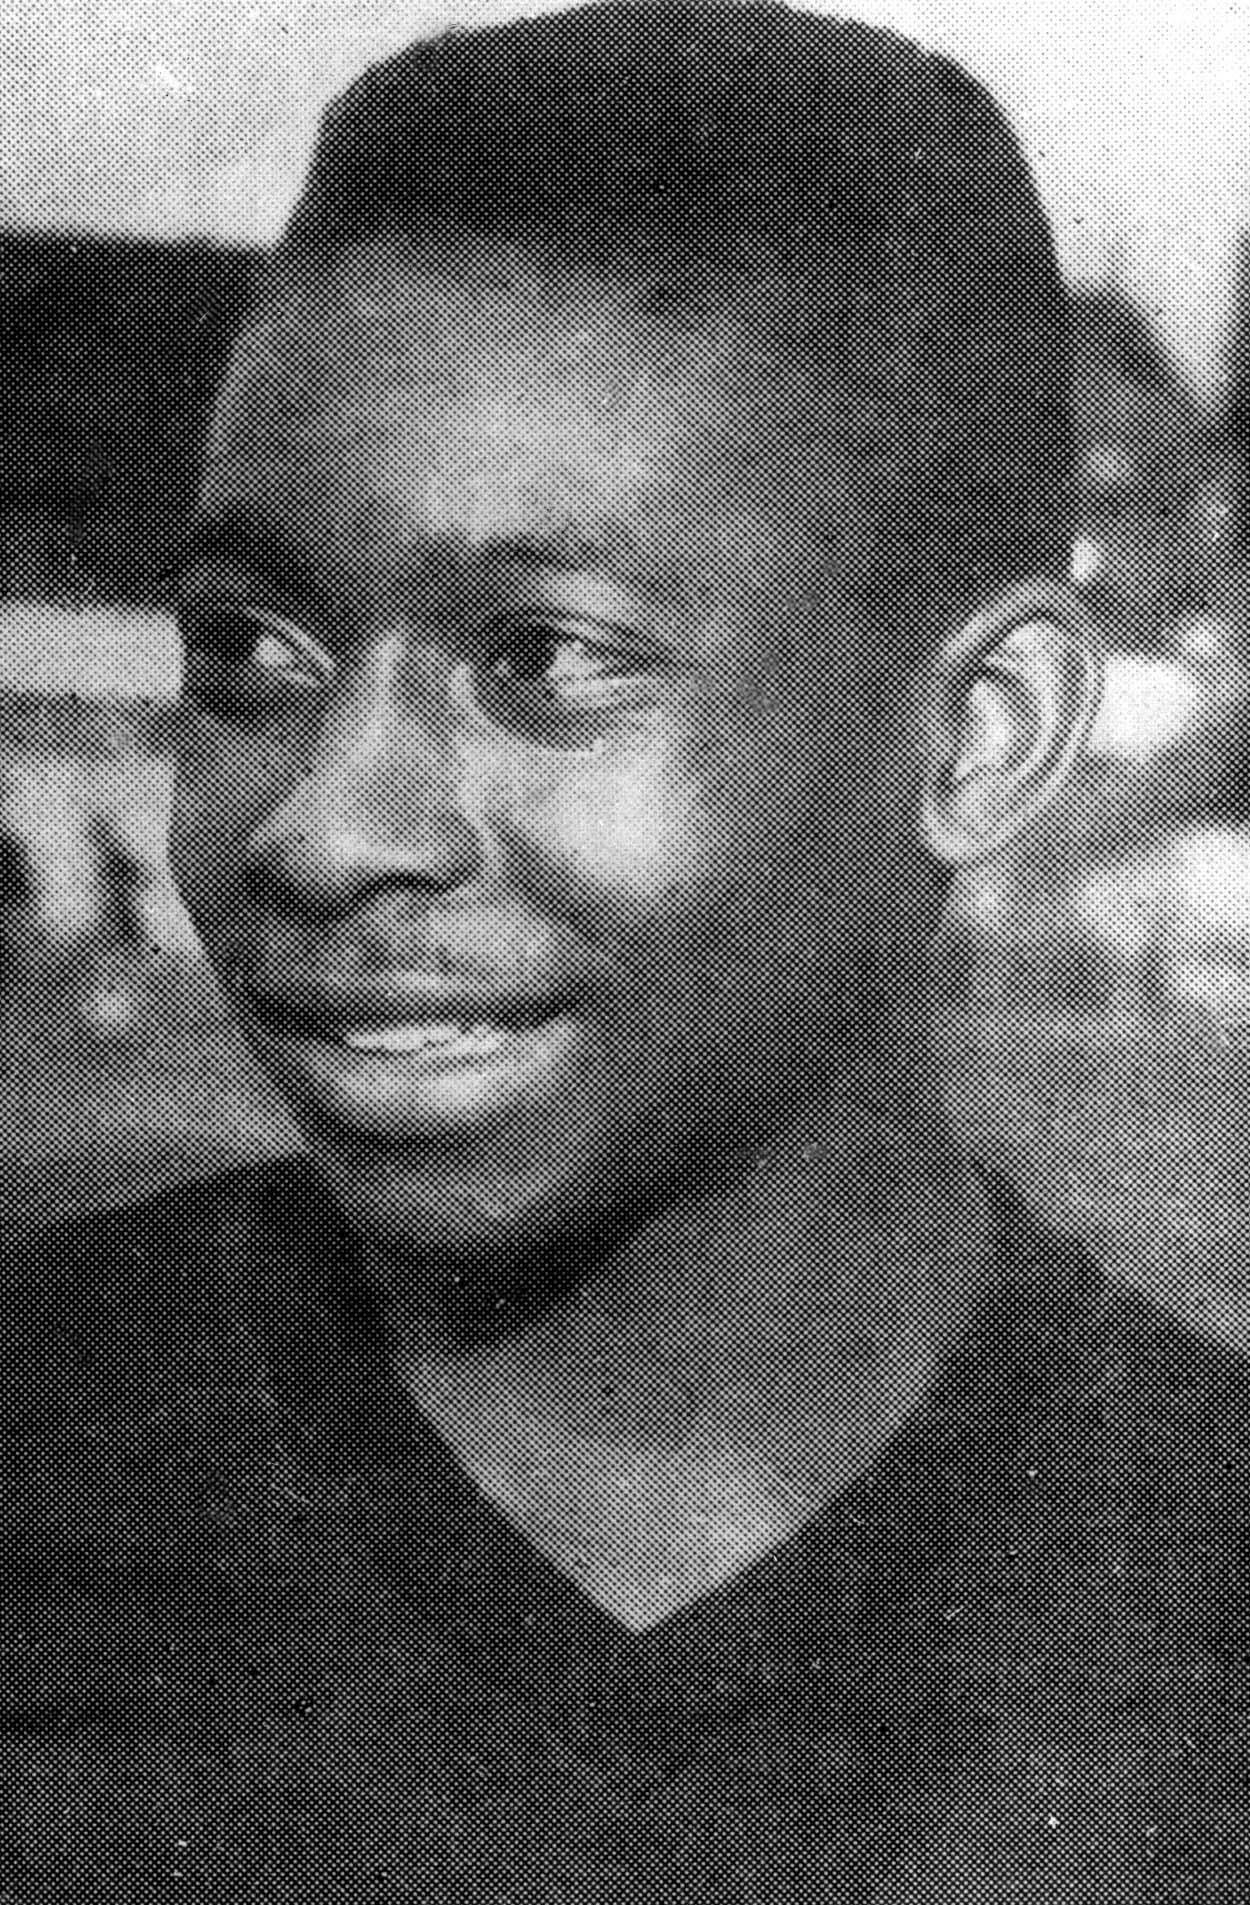 01/01/1950 - Pelé, ainda adolescente, pouco após ser descoberto em Bauru por Waldemar de Brito, que profetizou: "Esse menino ainda vai ser o melhor jogador do mundo". - Estadão Conteúdo